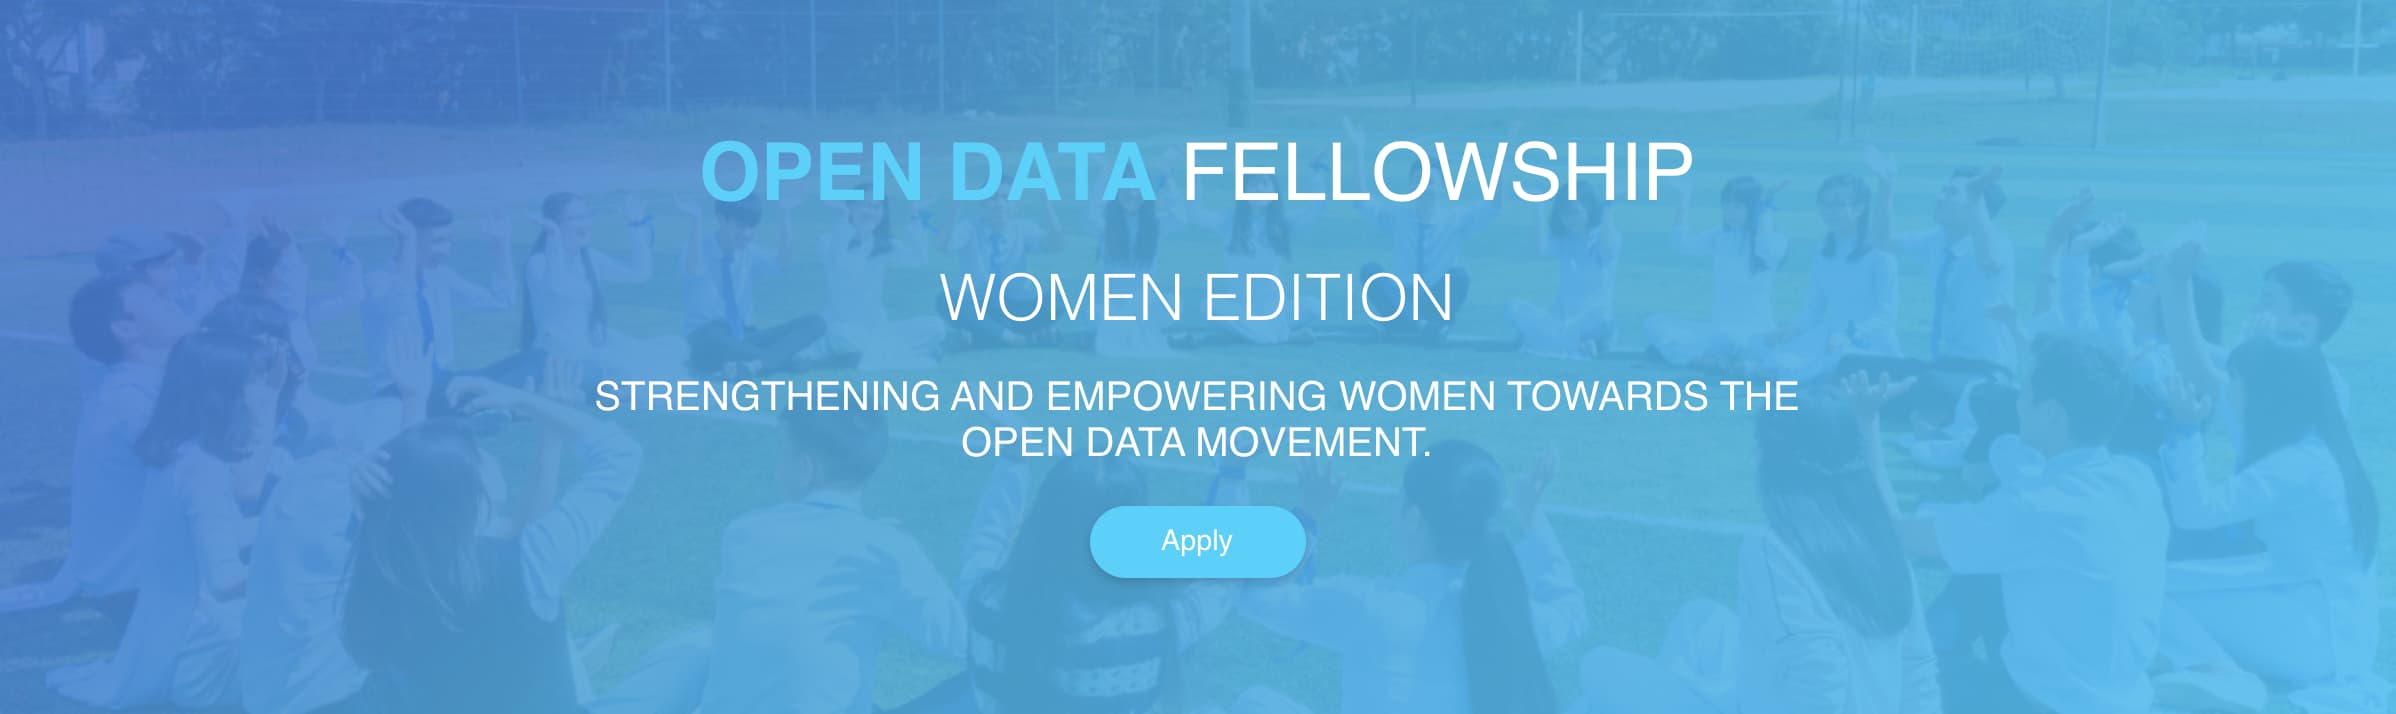 Open Data Fellowship - Women Edition